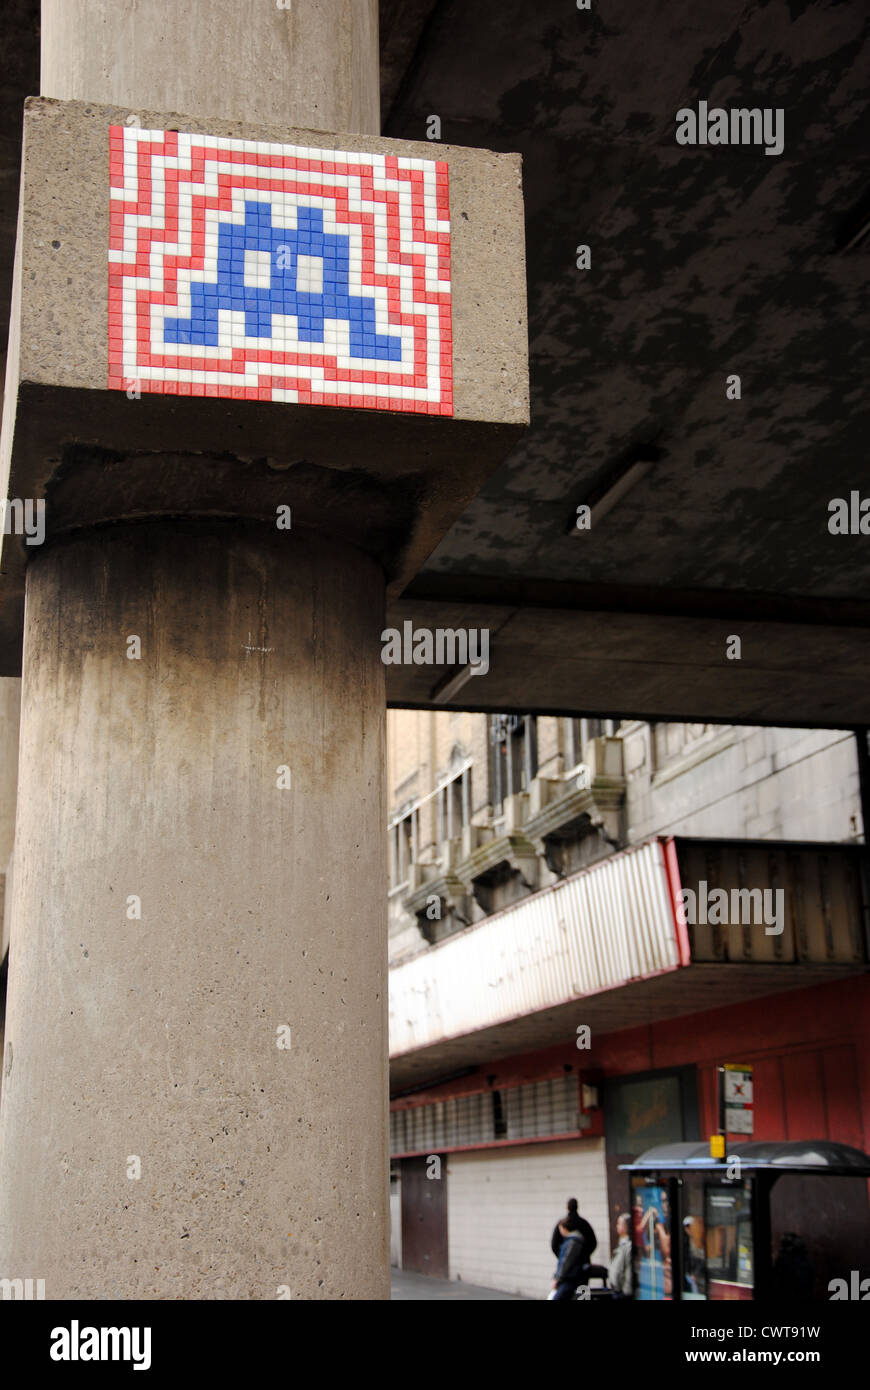 Mosaik "Graffiti" in Newcastle, UK vom französischen Künstler "Space Invader" Stockfoto